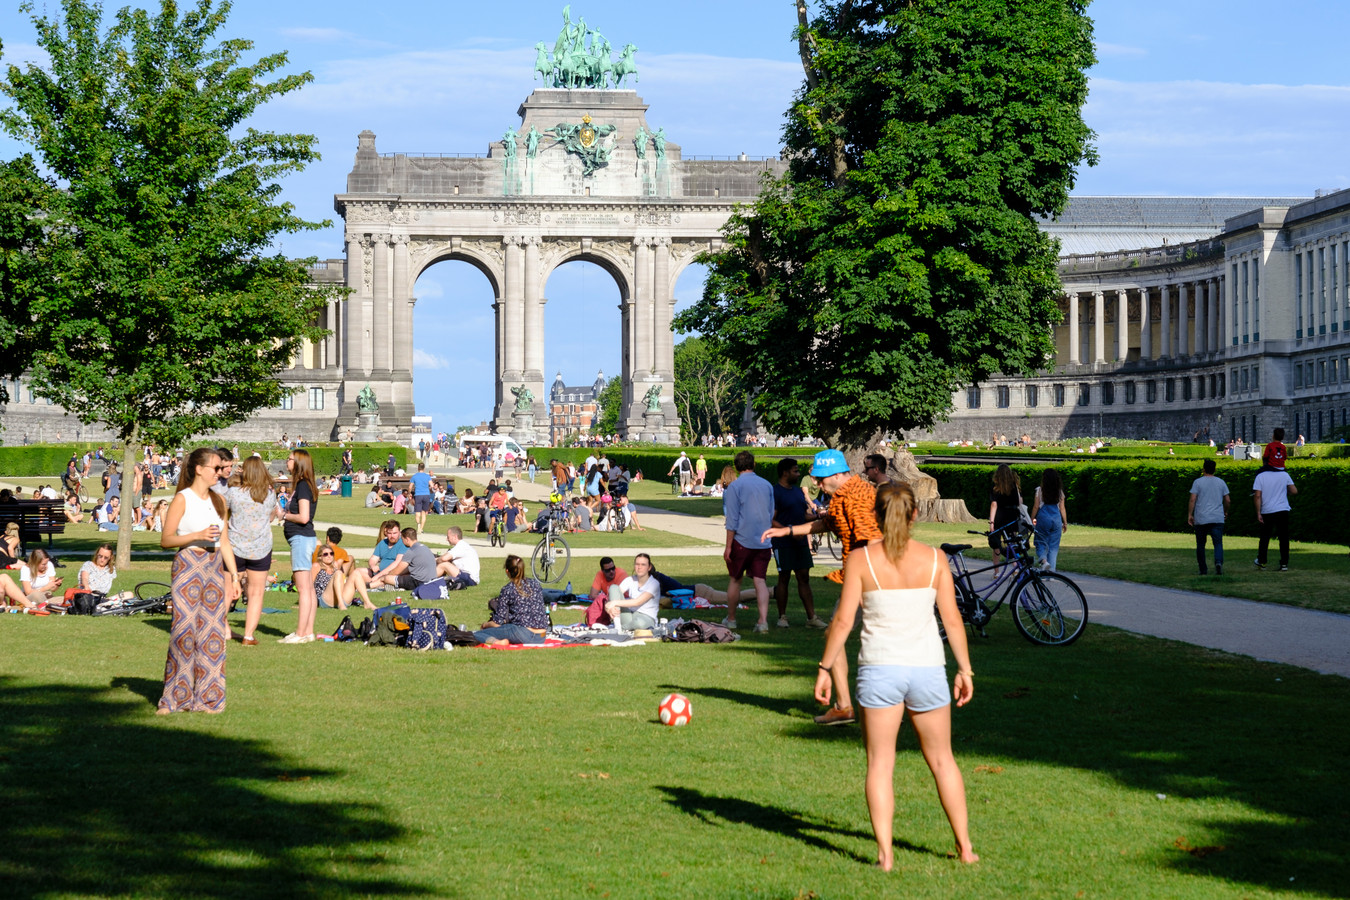 Foto ter illustratie. Mensen genieten van mooi weer in het Jubelpark, Brussel. Belgische werknemers krijgen het recht op een vierdaagse werkweek, met behoud van loon. Ook krijgen zij het recht om buiten werktijden niet gestoord te worden door de werkgever.